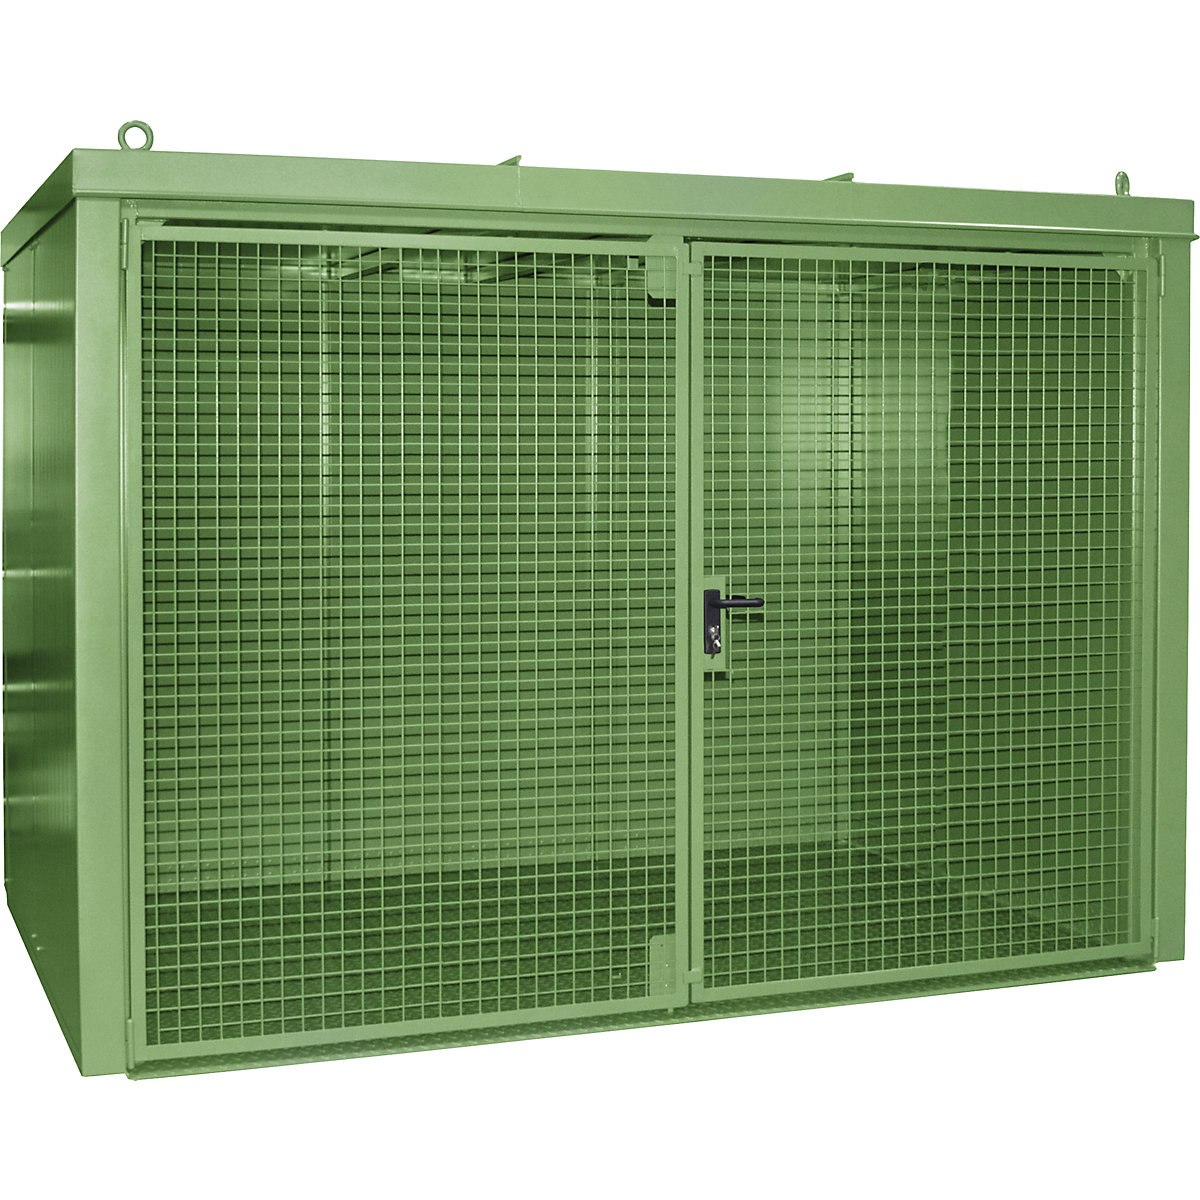 Gázpalacktároló konténer, tűzálló – eurokraft pro, 60 db, egyenként 230 mm átmérőjű palackhoz, zöld-5